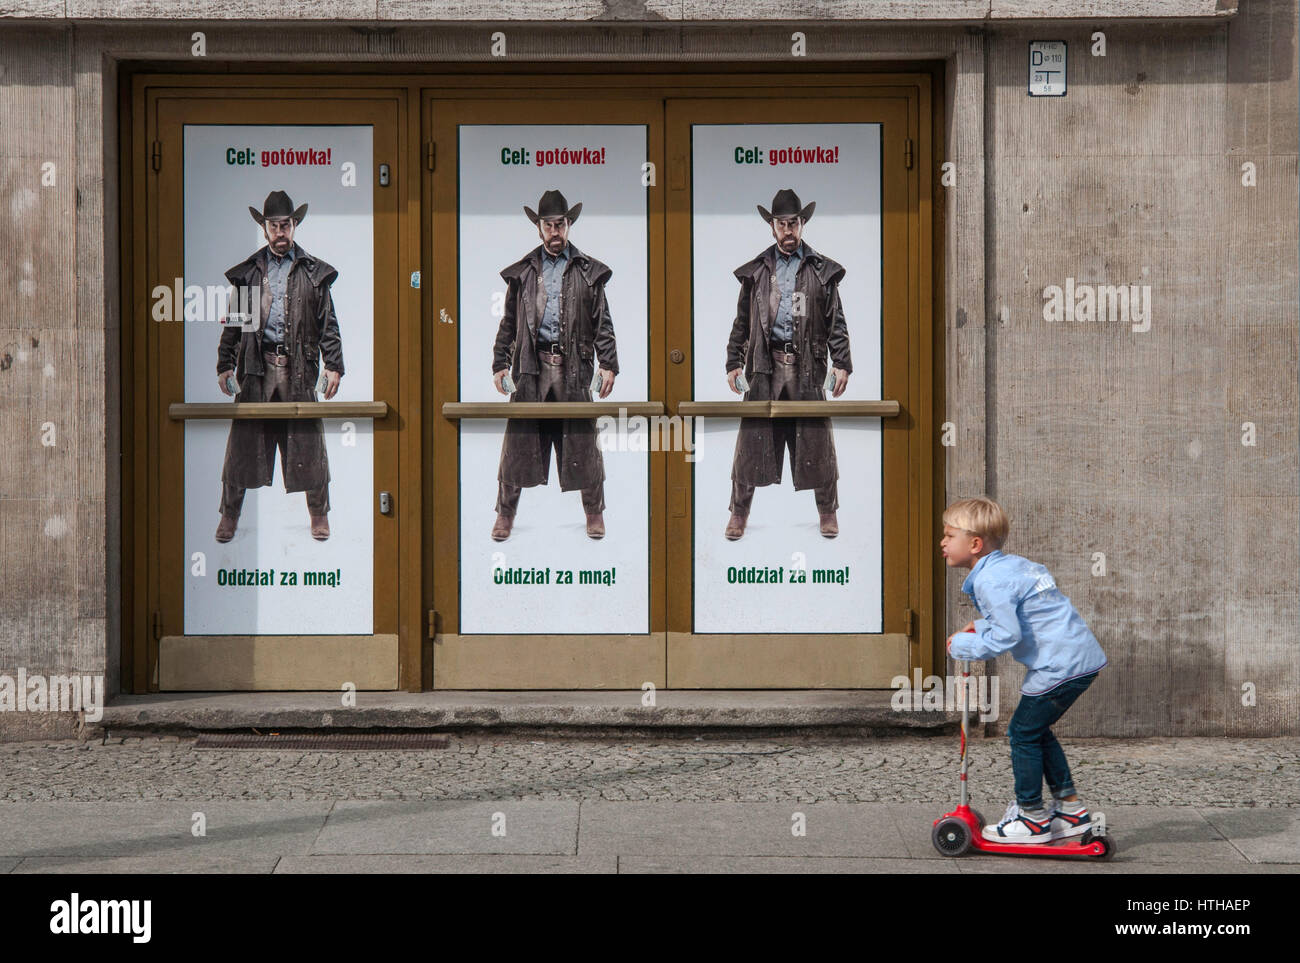 Garçon sur un scooter, traînent dans les rues, 'Cible : l'argent ! Suivez-moi !" les troupes de l'Acteur Chuck Norris affiche publicitaire pour Bank Zachodni WBK à Wroclaw, Pologne Banque D'Images